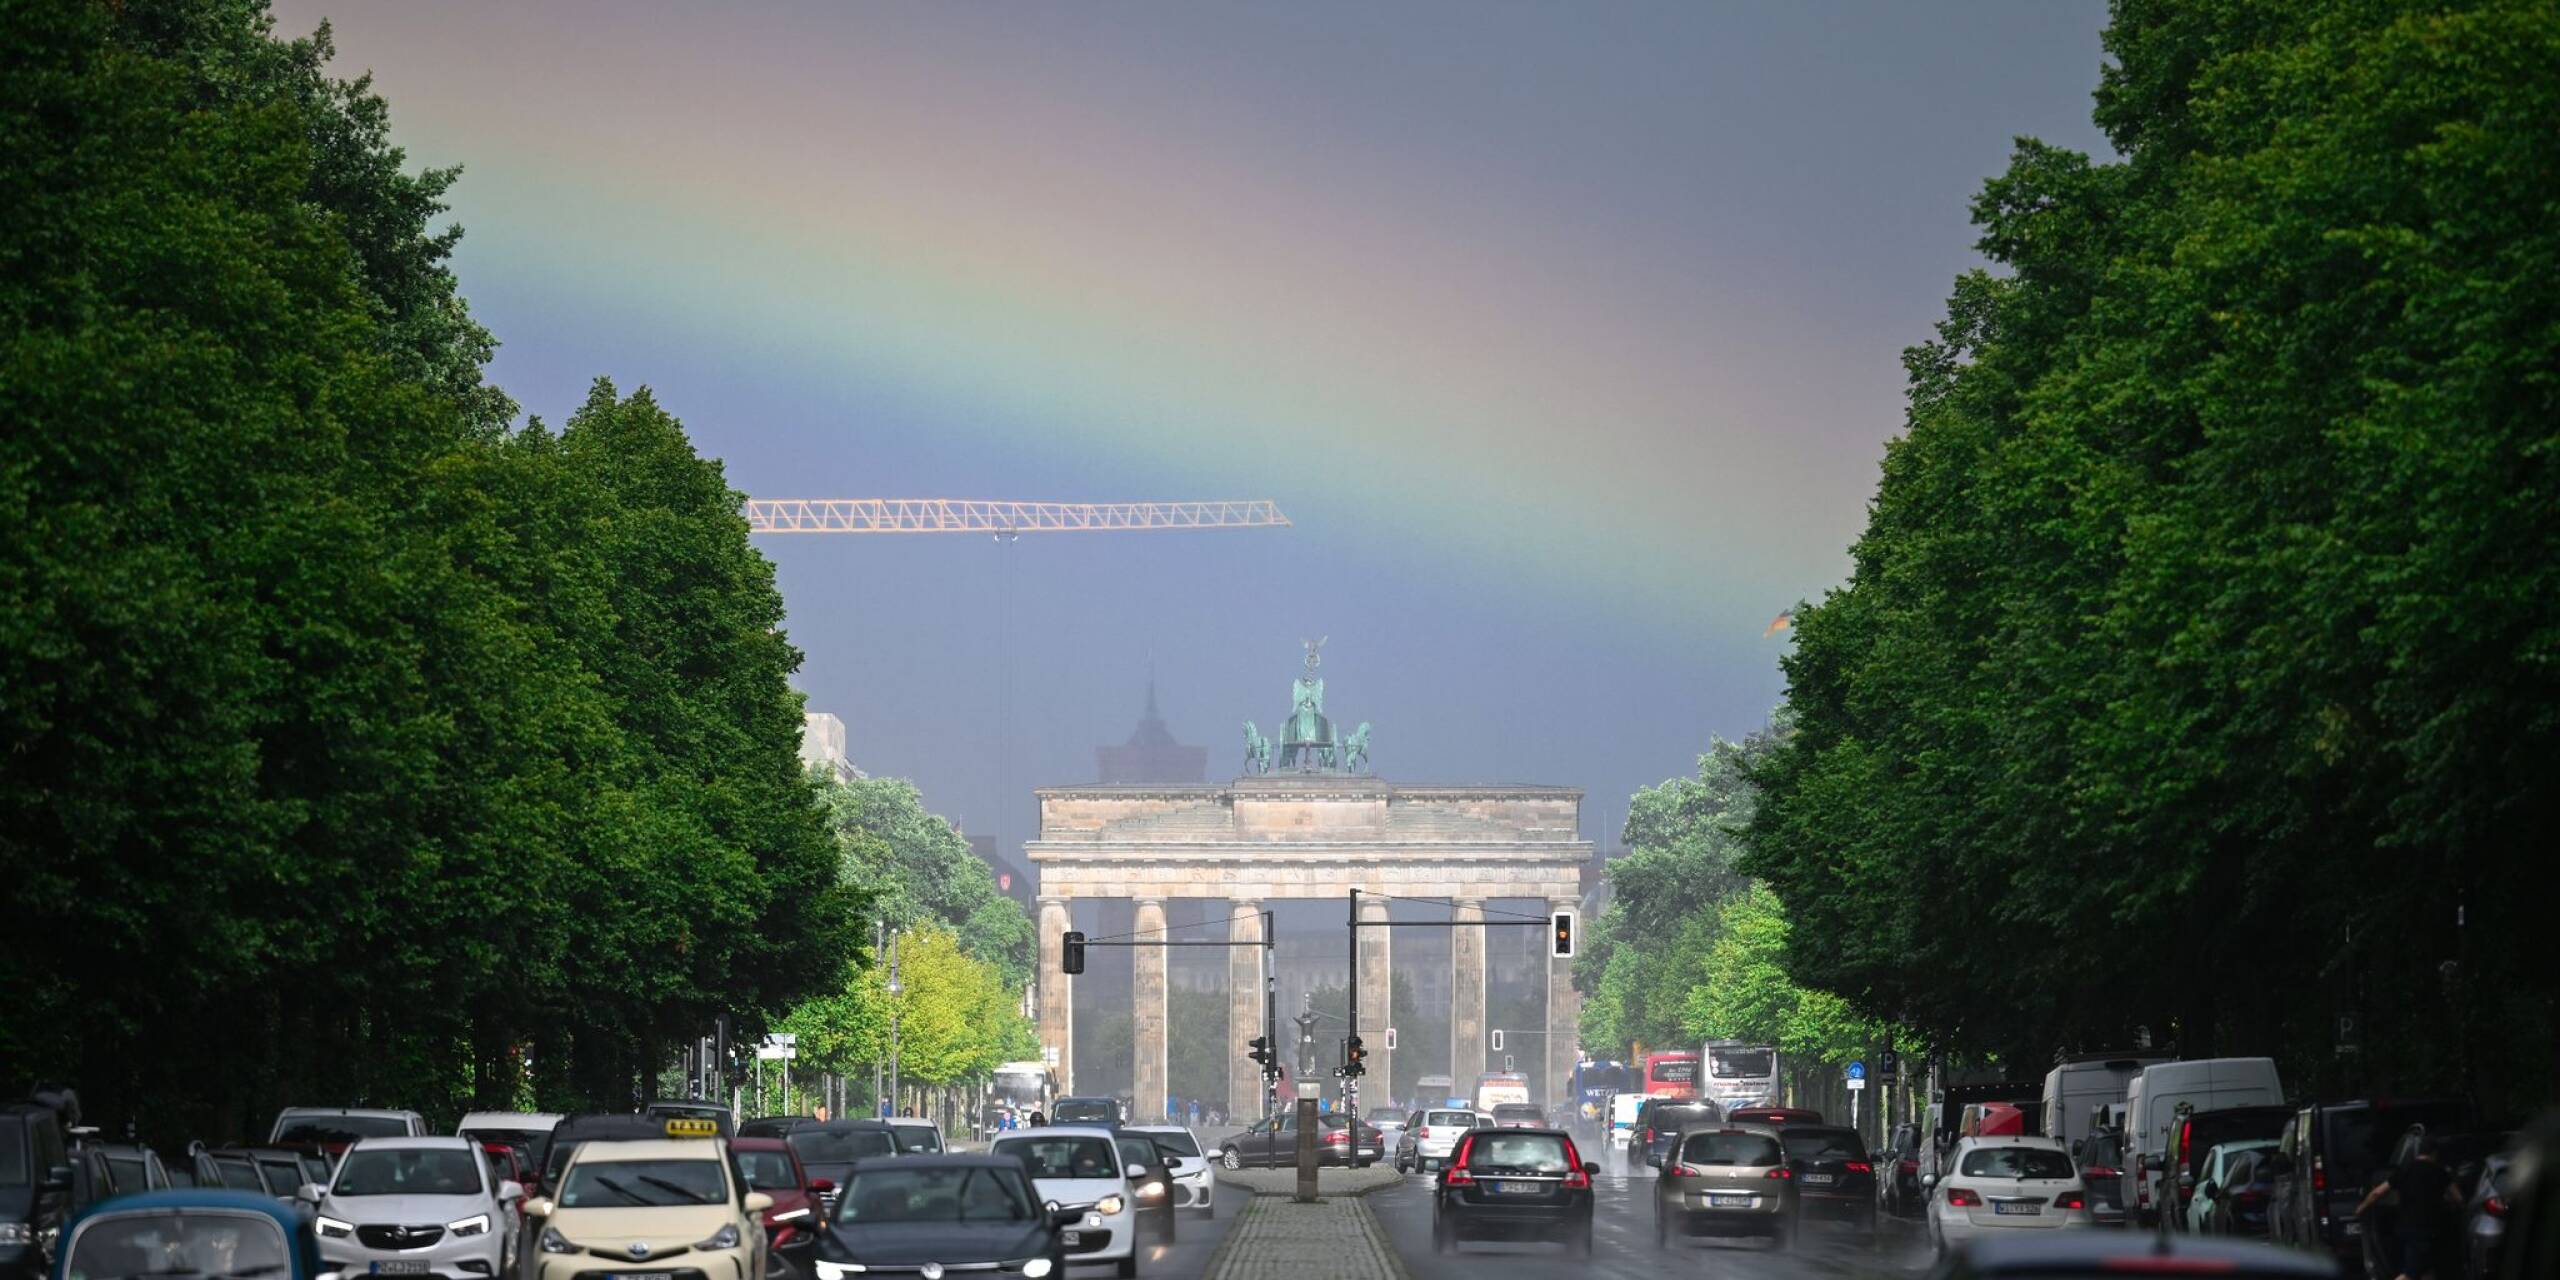 Ein Regenbogen ist in Berlin über dem Brandenburger Tor zu sehen. Zur Abwechslung mal ein schöner Anblick während des grauen Wetters.